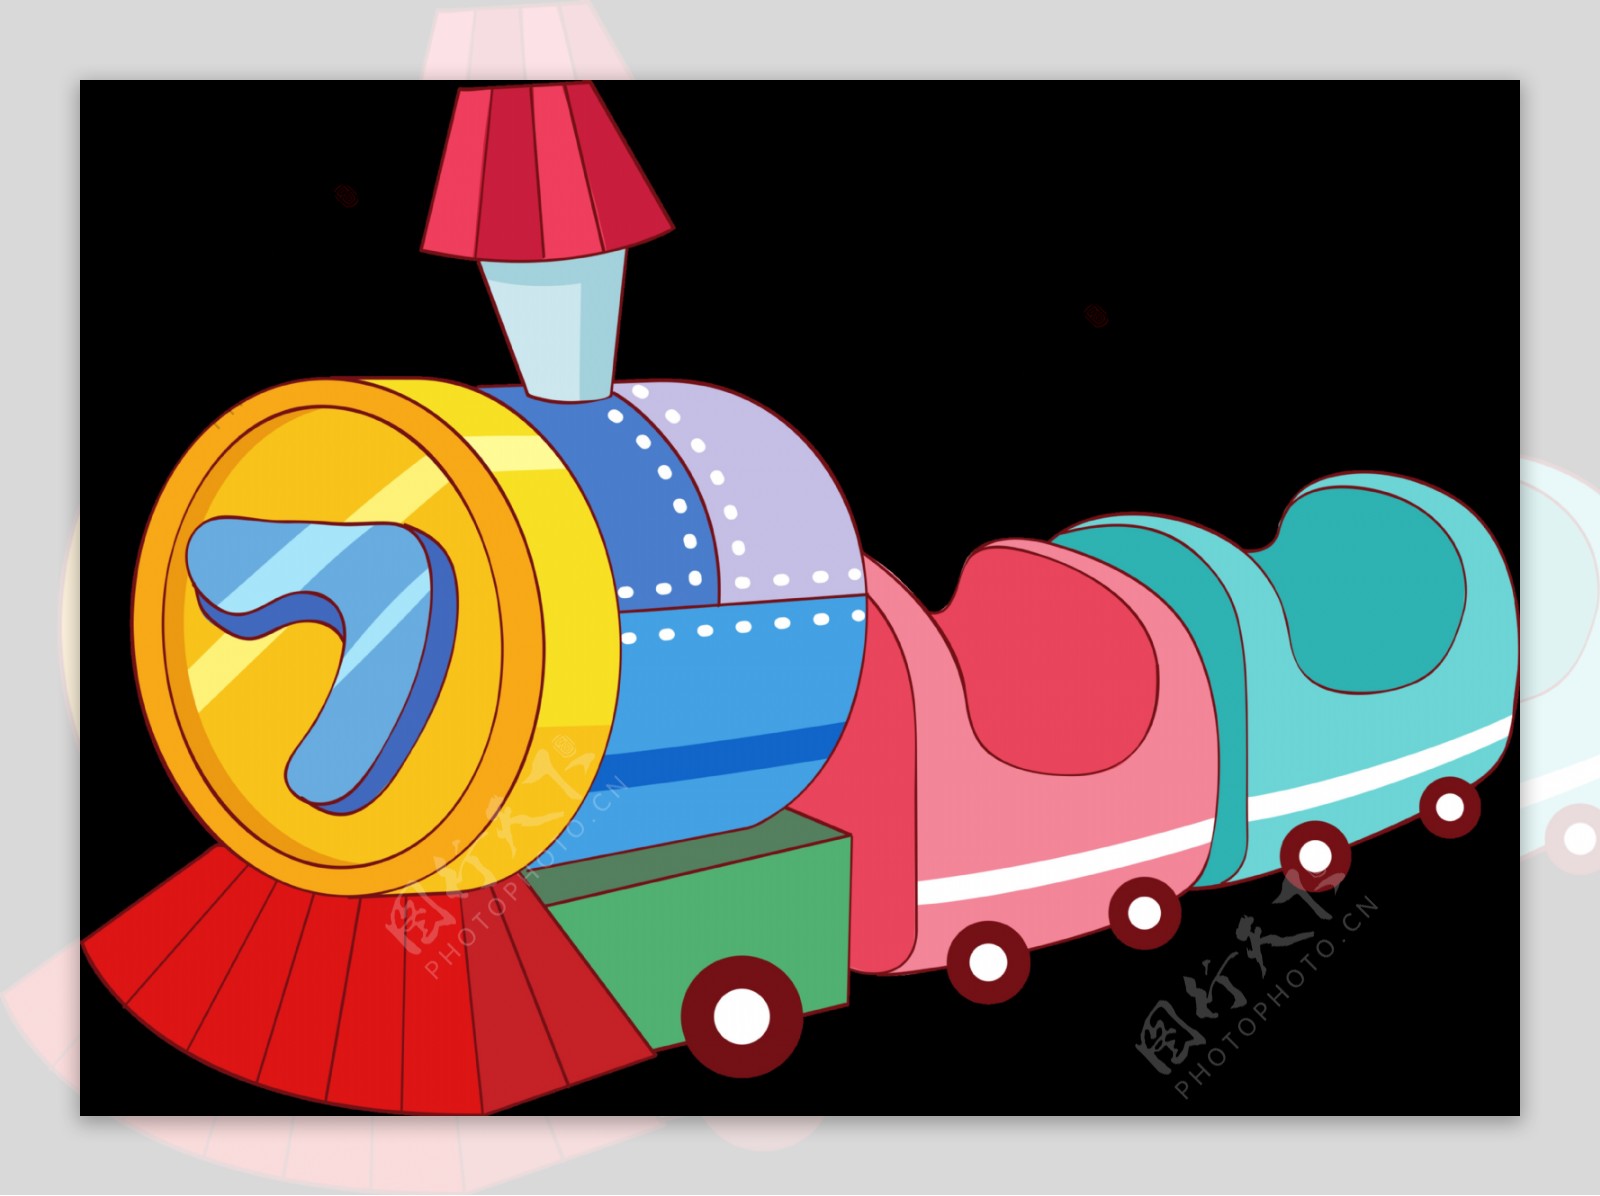 彩色卡通小火车元素设计